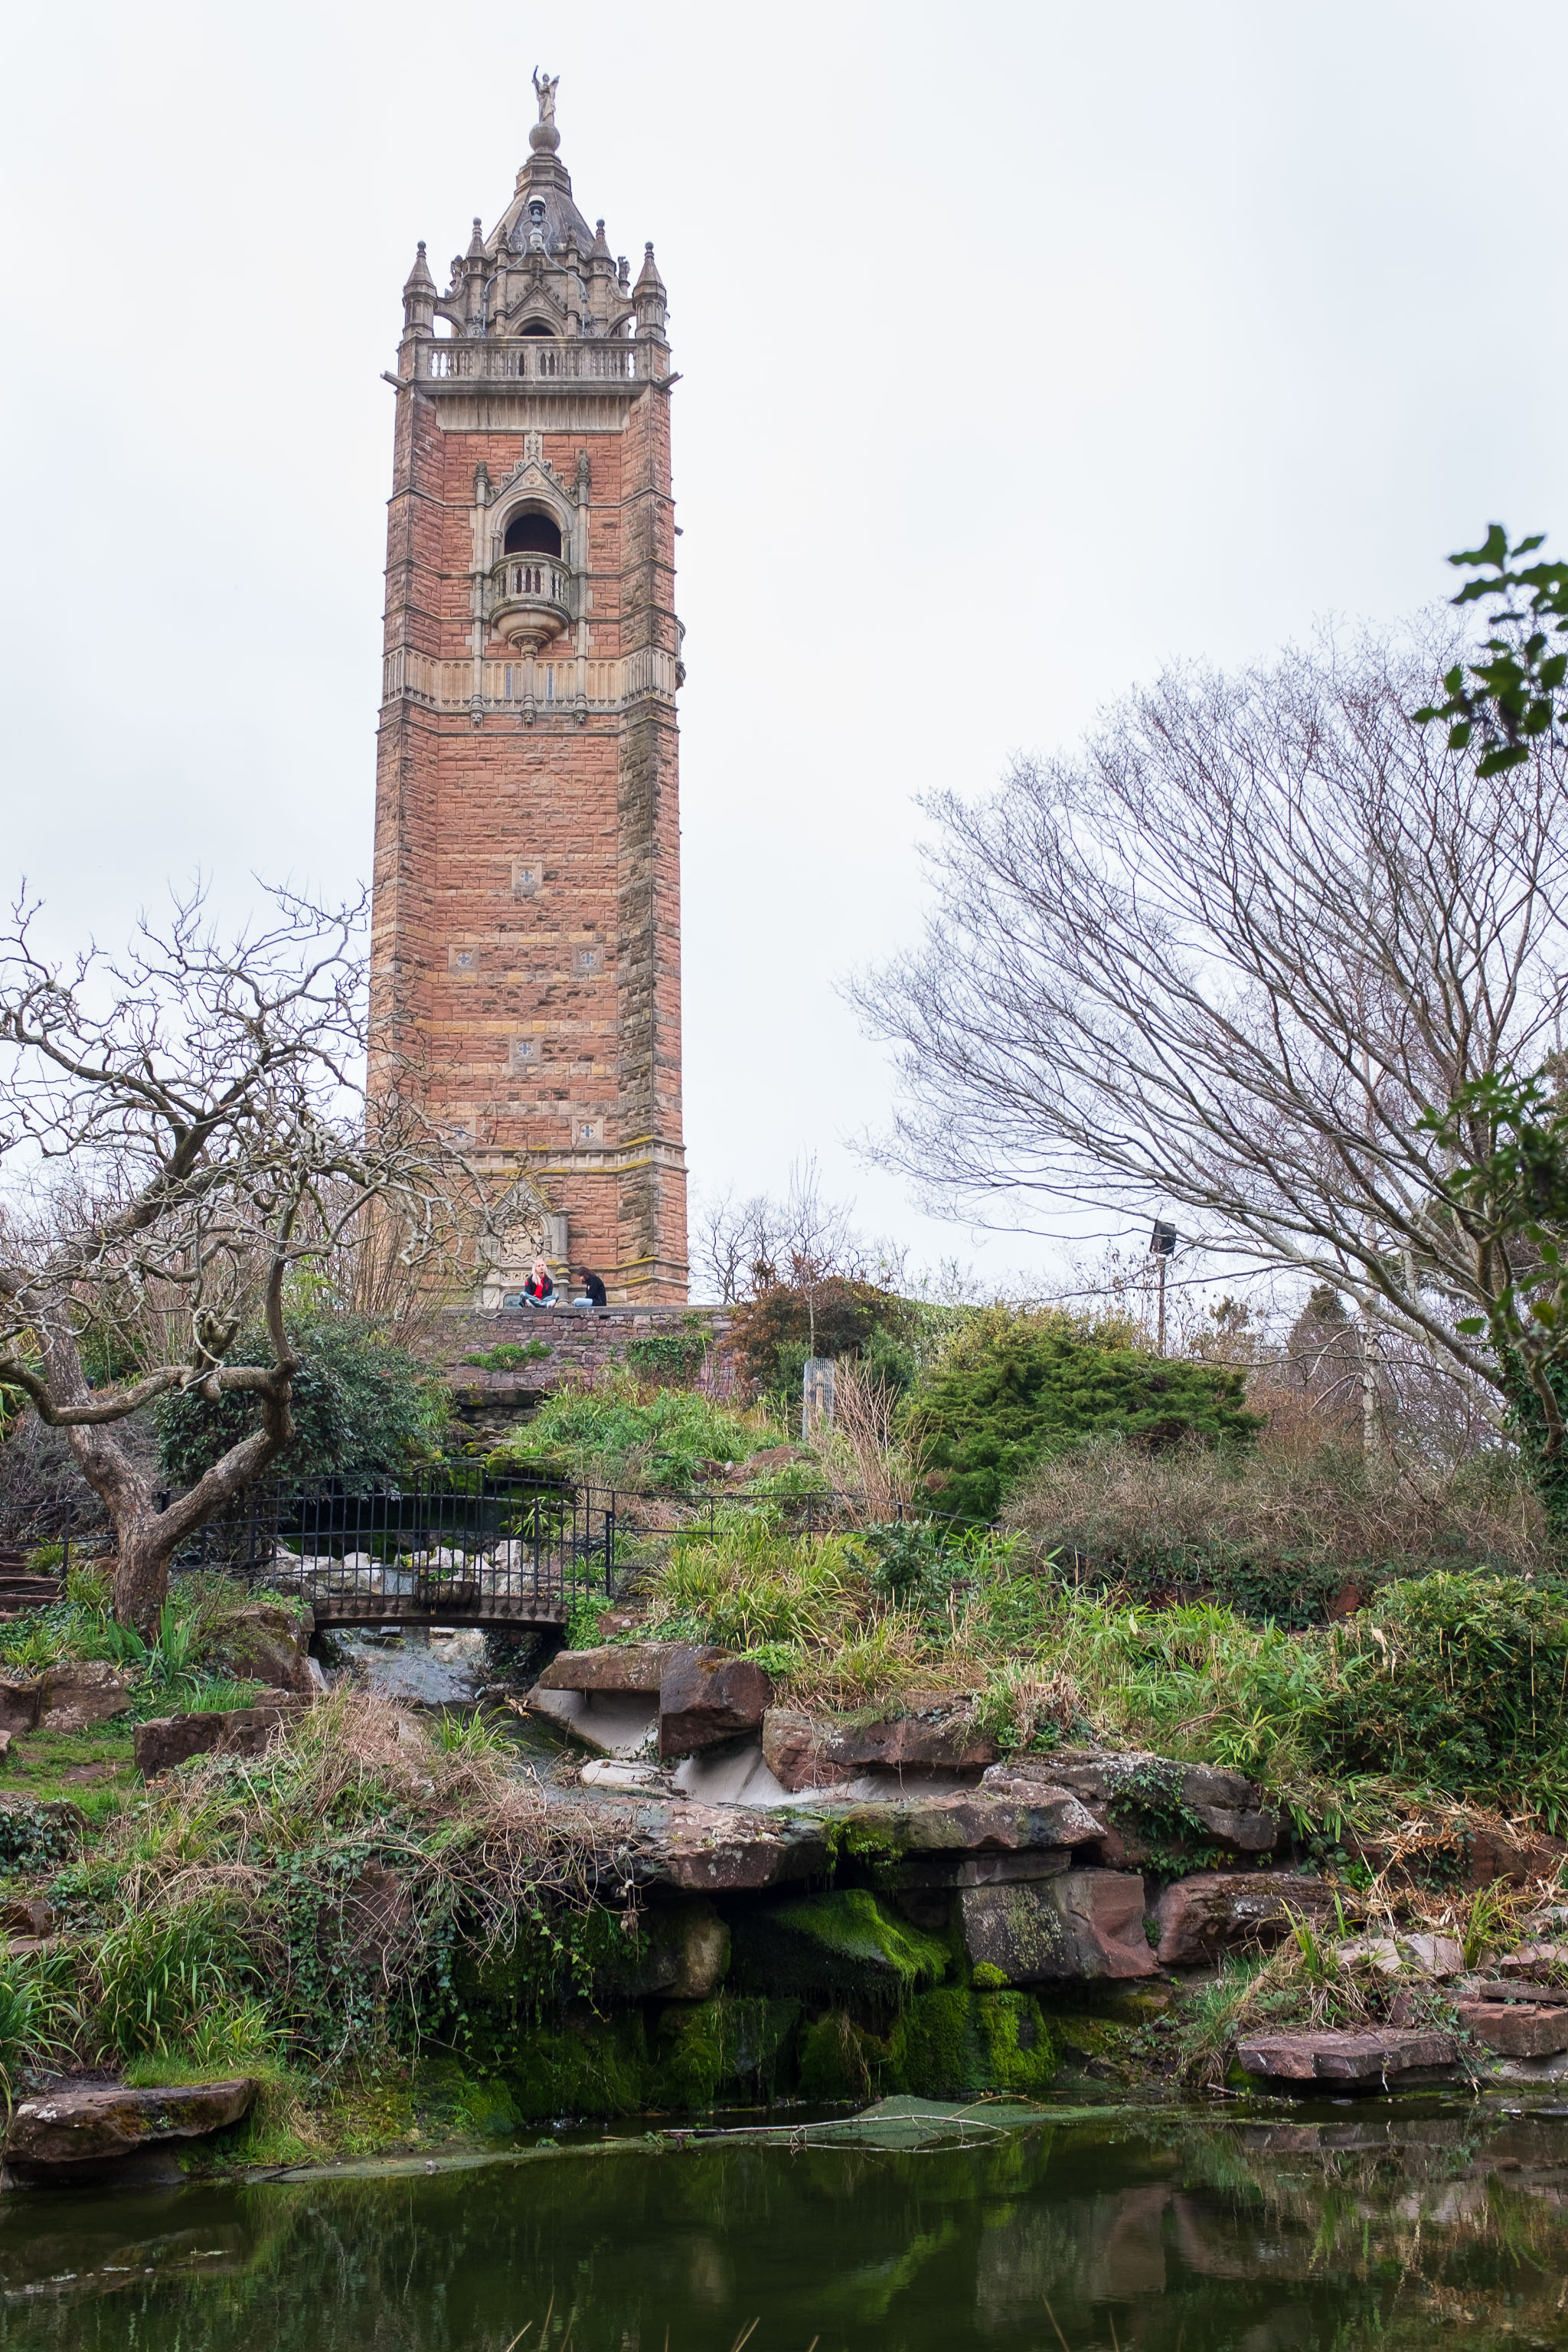 Fairytale Tower
